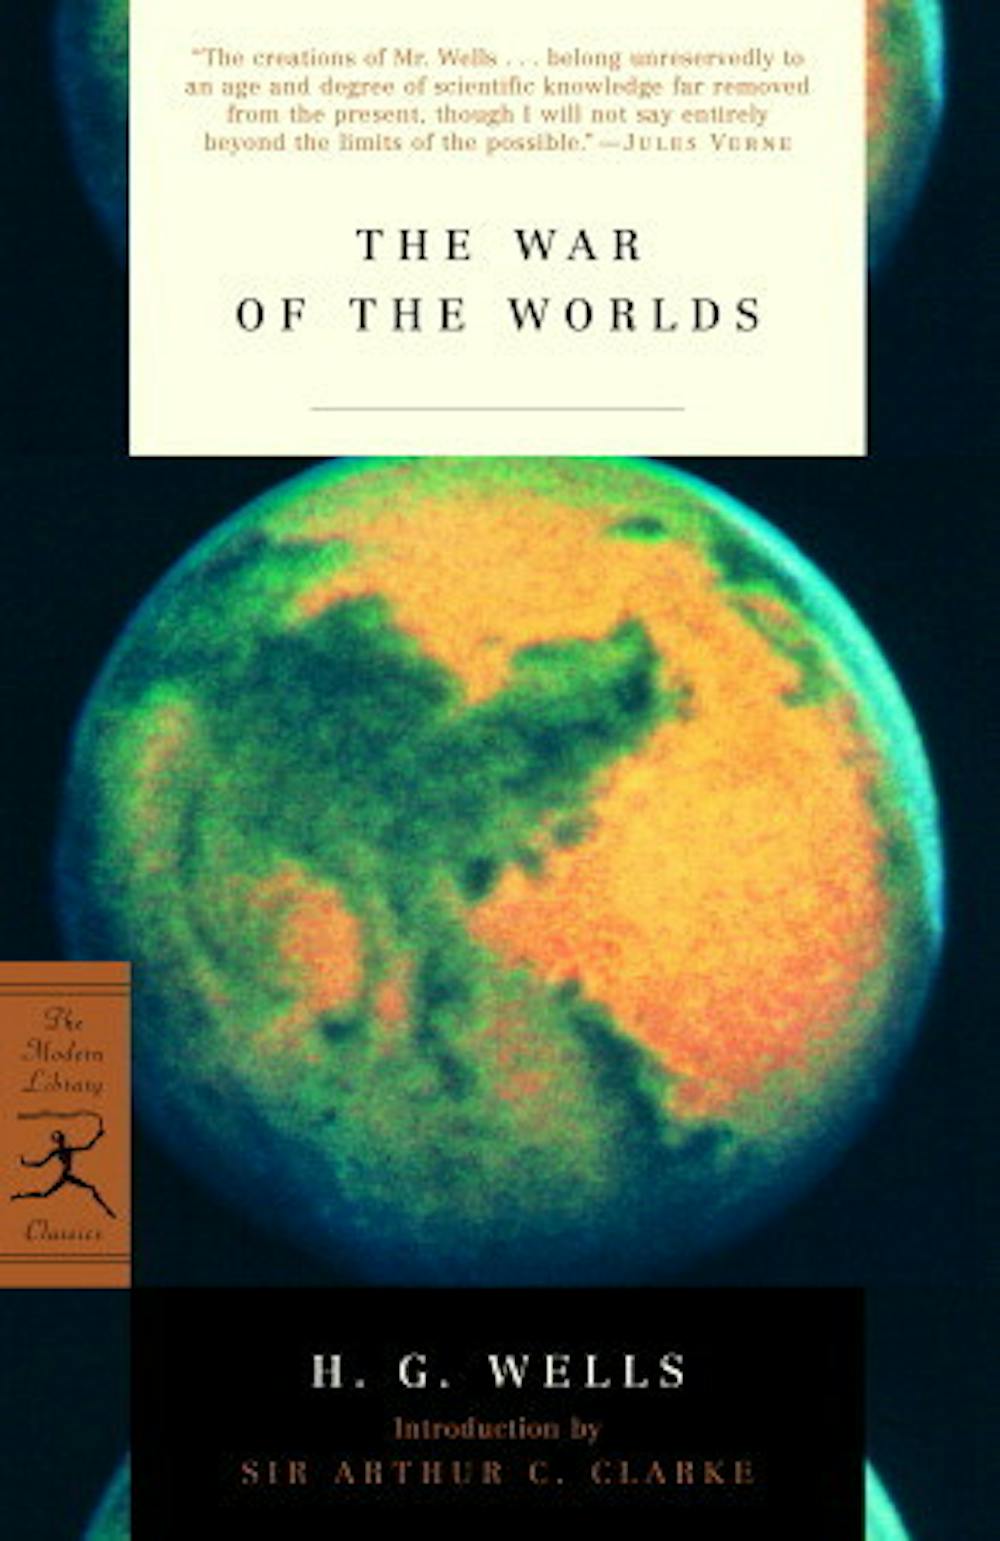 Liu Cixin's War of the Worlds